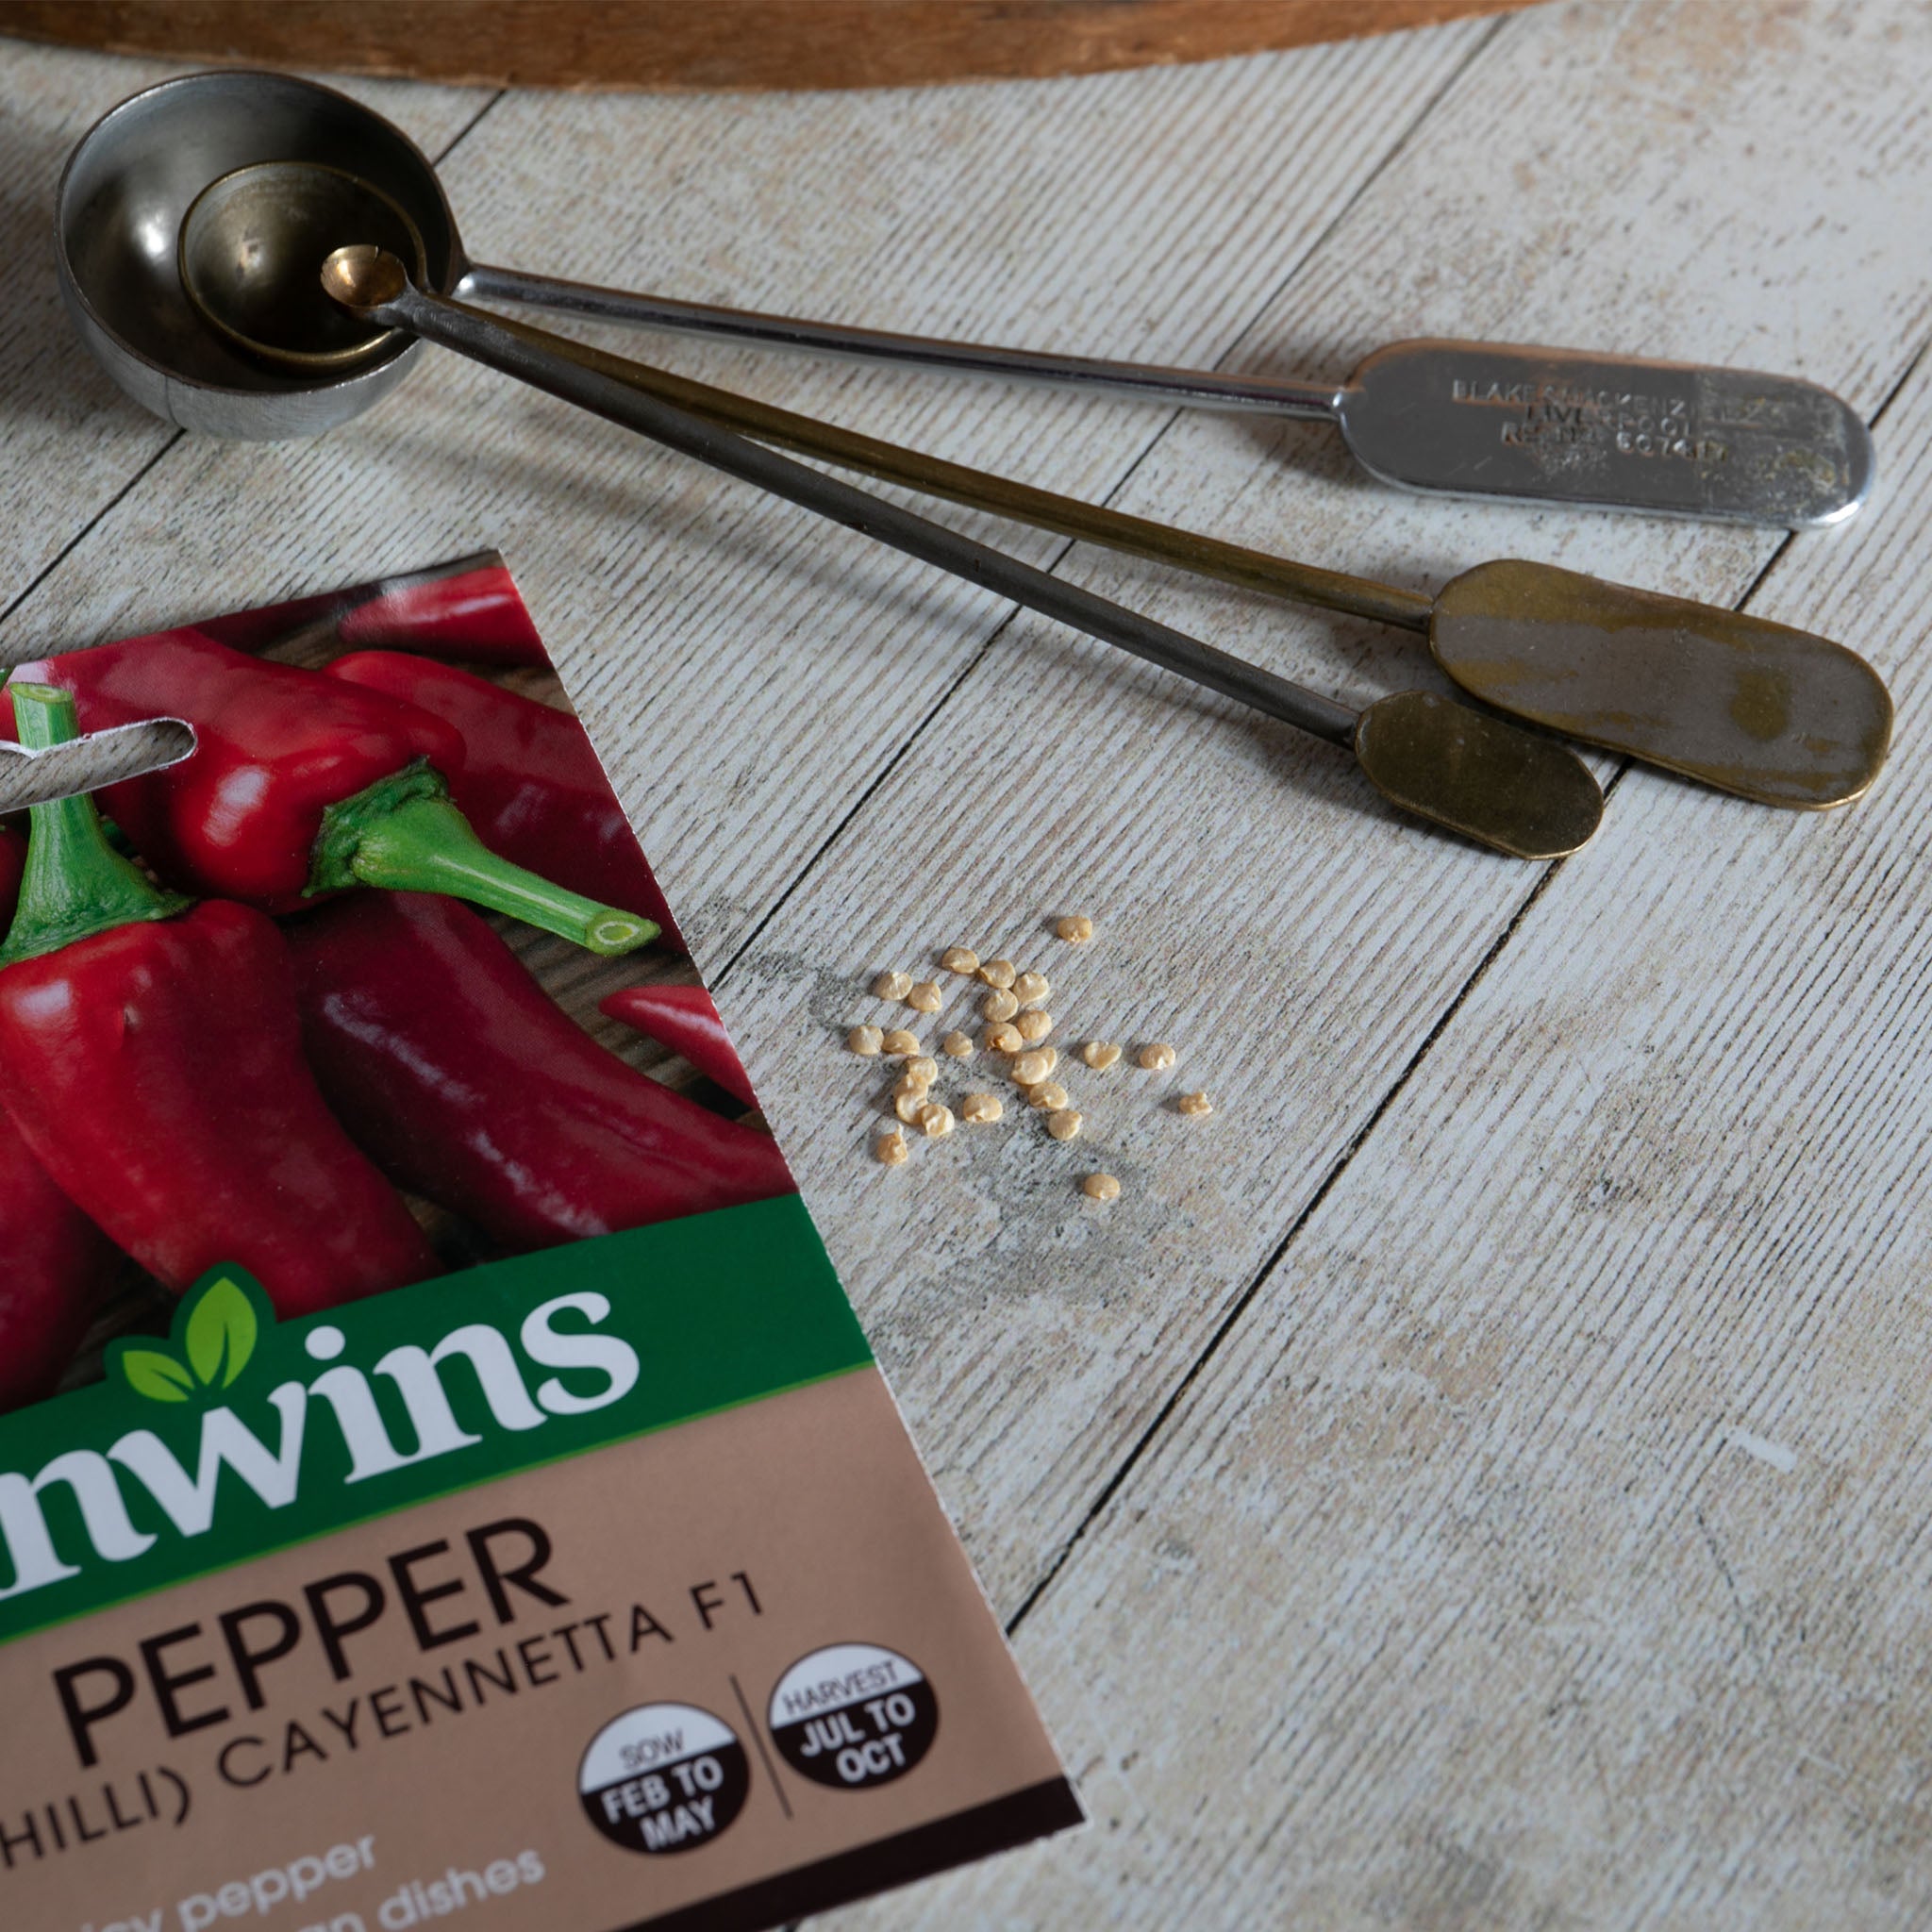 Unwins Chilli Pepper Cayennetta F1 Seeds